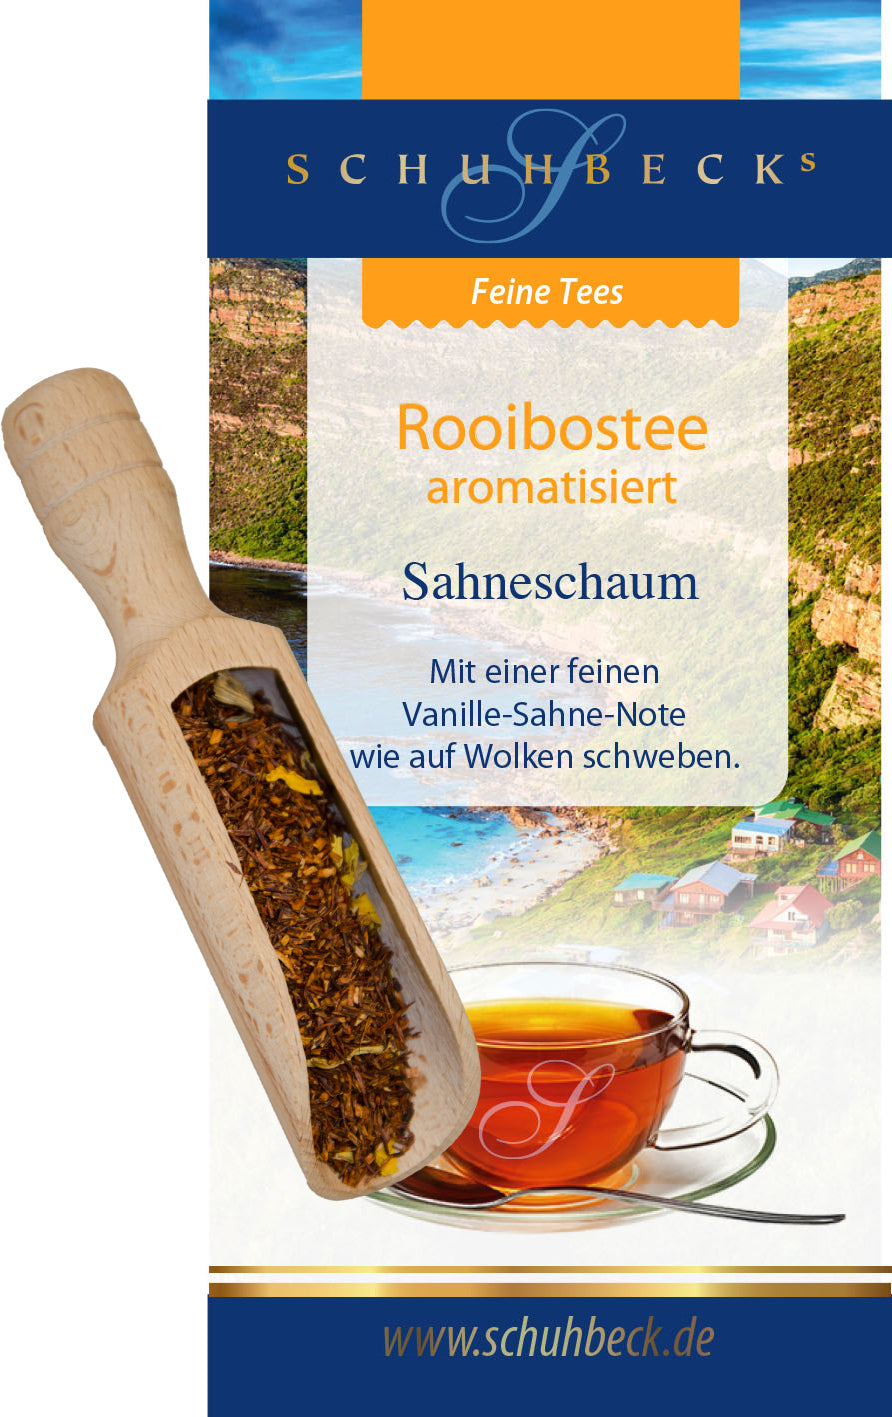 Rooibostee aromatisiert - Sahneschaum